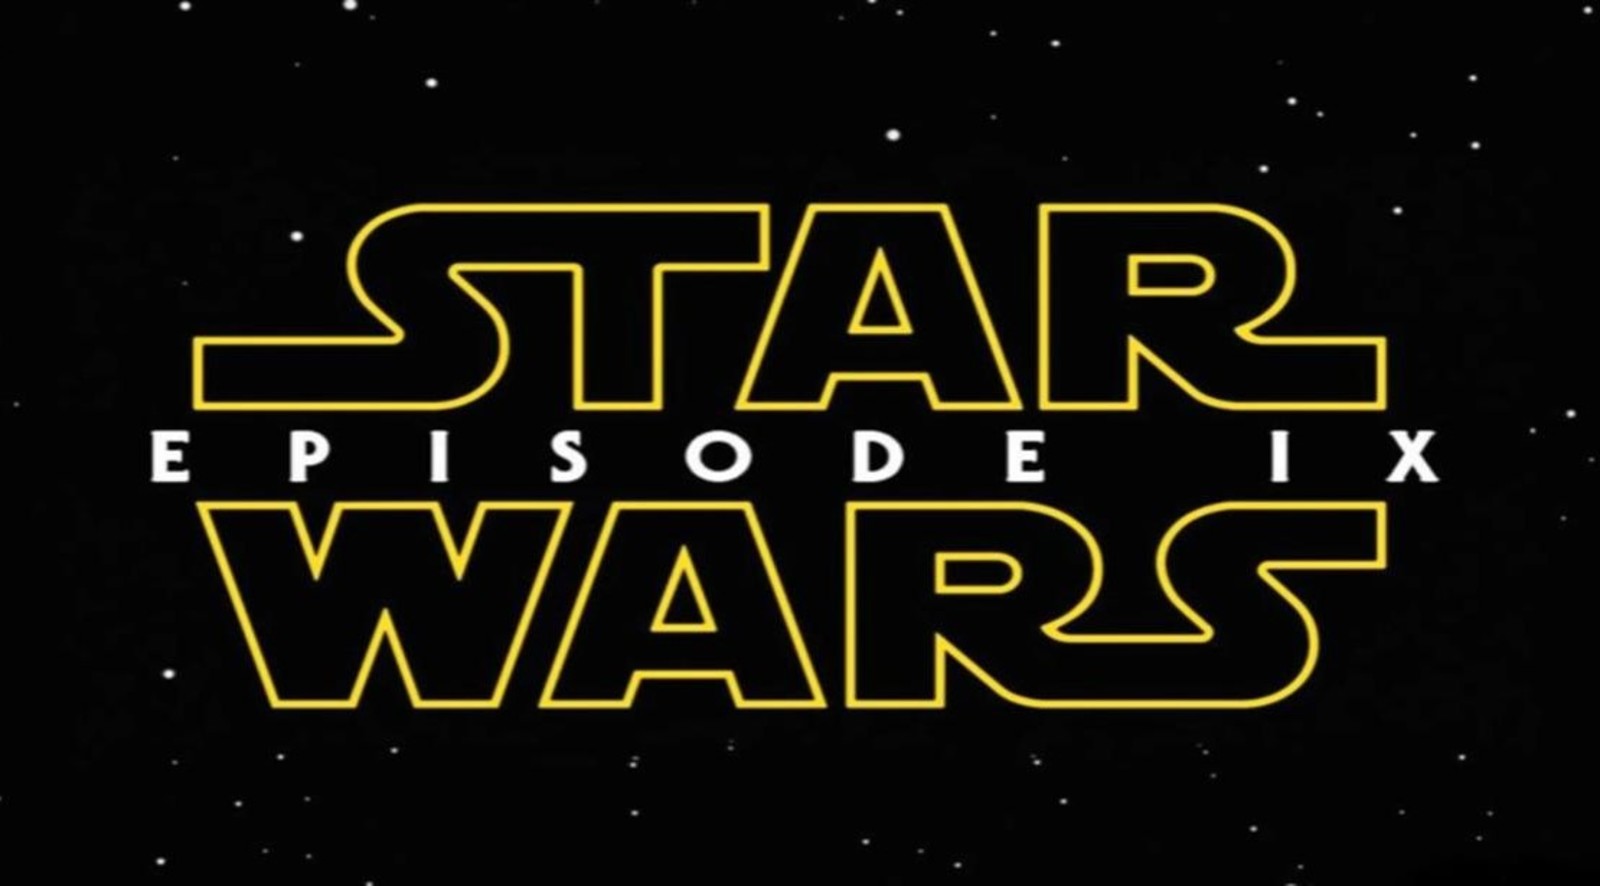 A la espera. Star Wars Episodio IX, o Balance of the Force, si es que realmente se termina llamando así, llegará el 20 de diciembre. (IMDB)